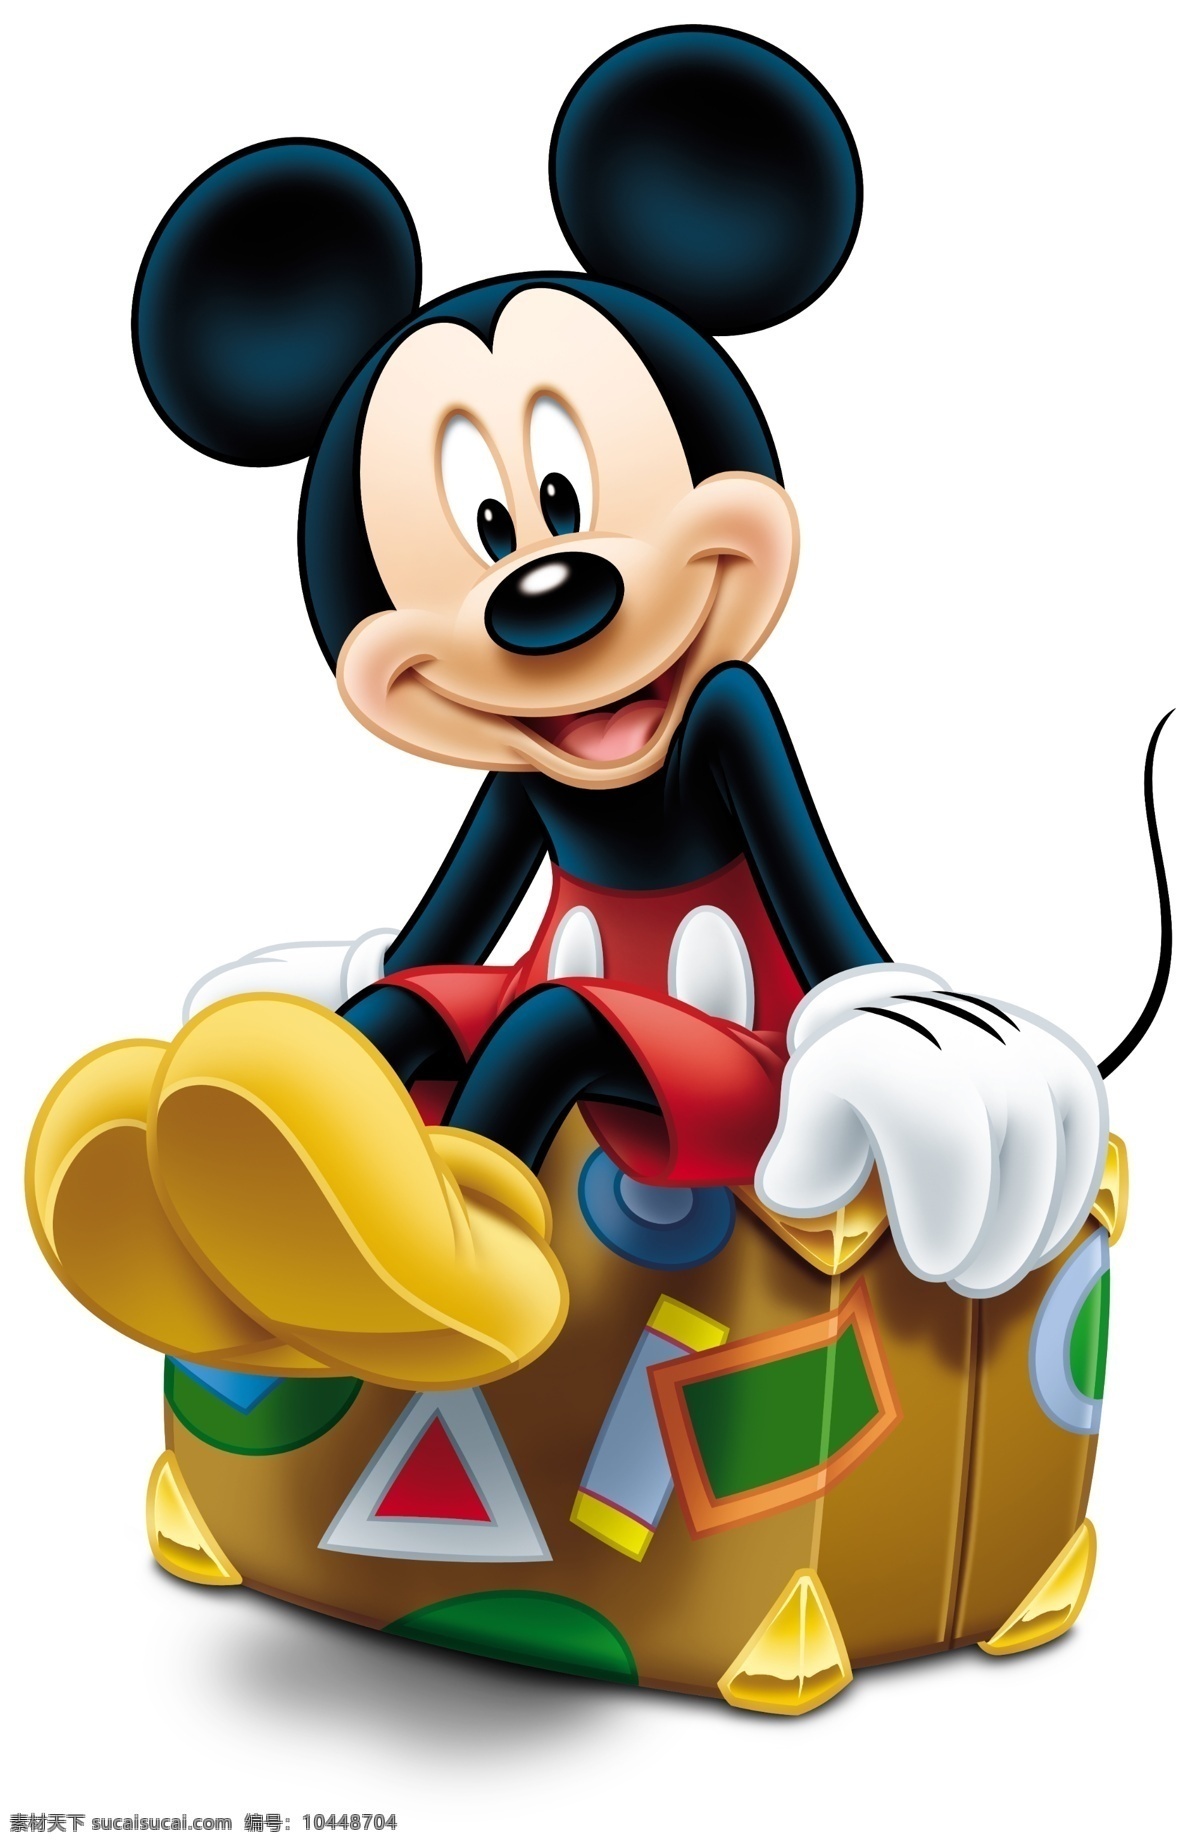 坐在 行李箱 上 米奇 坐着 迪士尼动画 动画形象 卡通形象 其它模板 广告设计模板 psd素材 白色